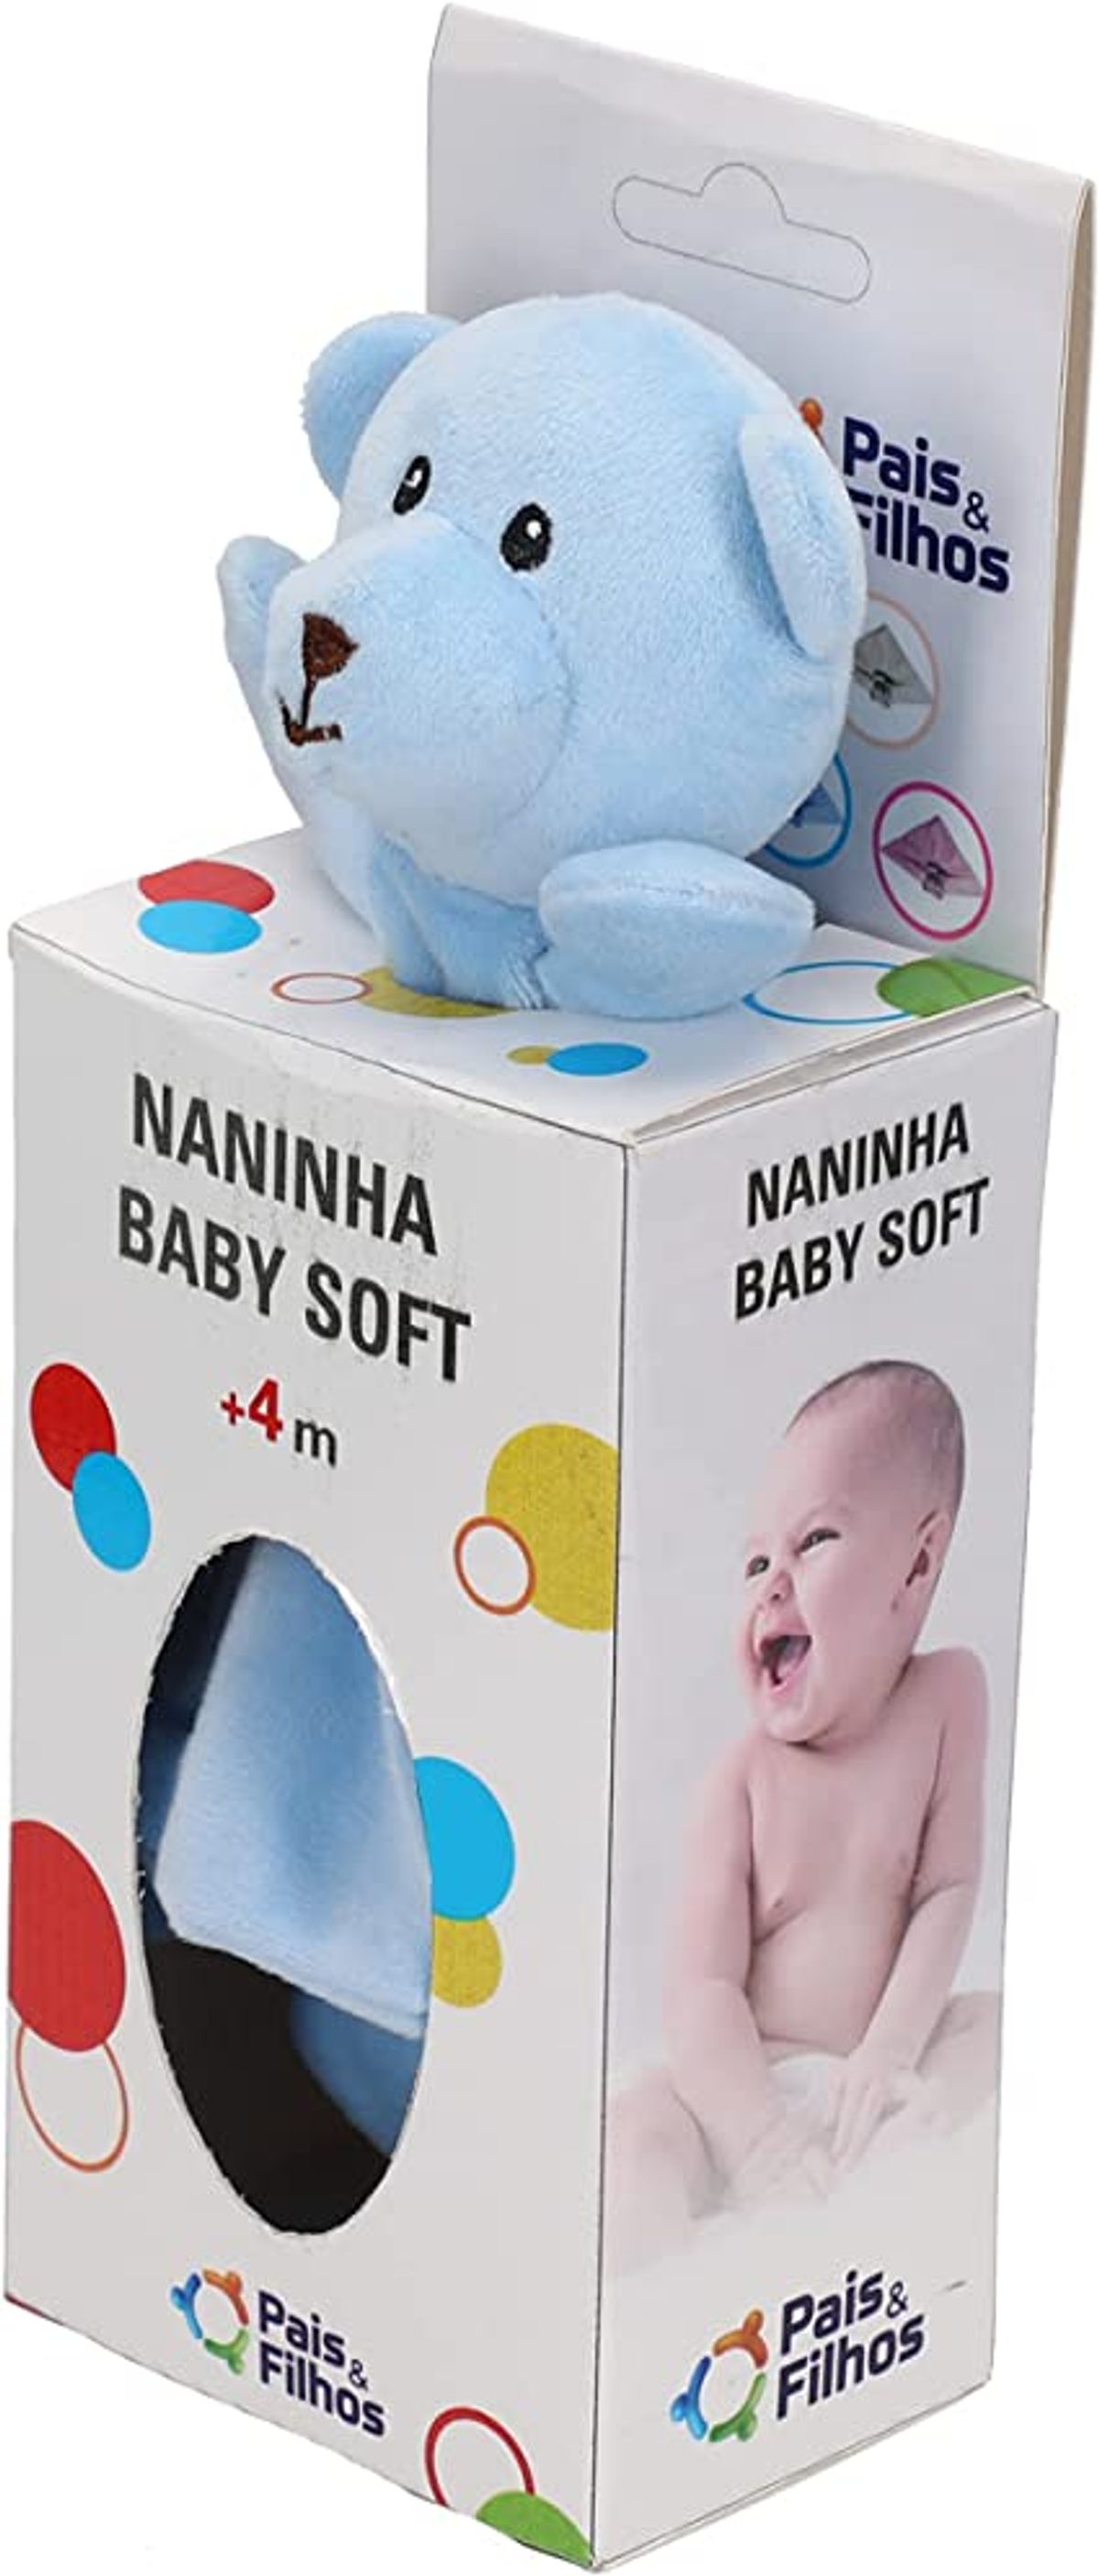 Naninha Pais&Filhos Baby Soft Azul